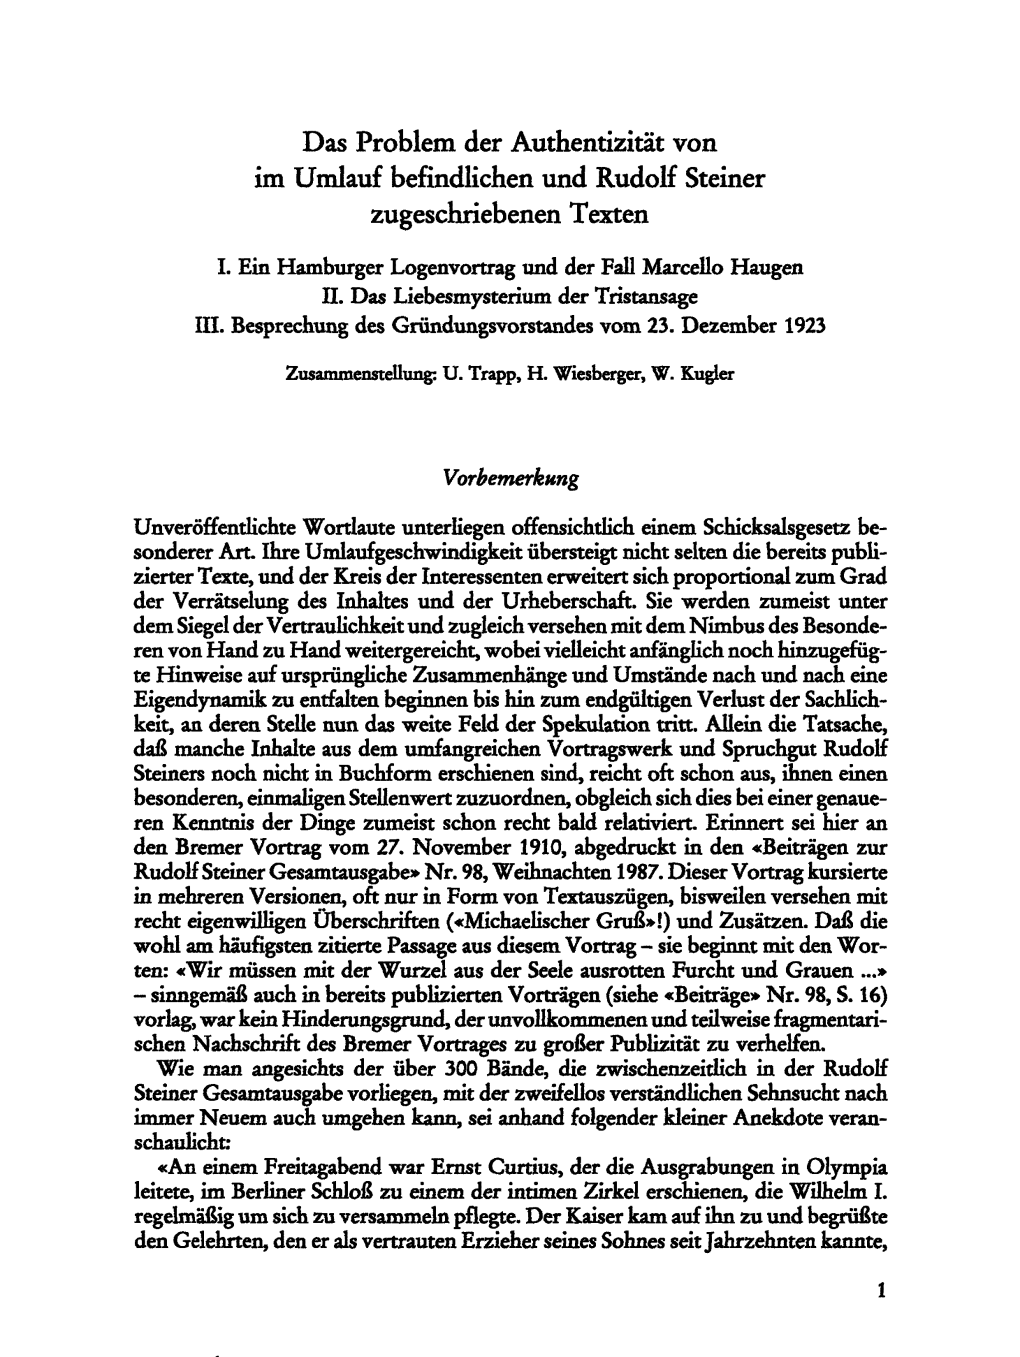 Das Problem Der Authentizität Von Im Umlauf Befindlichen Und Rudolf Steiner Zugeschriebenen Texten